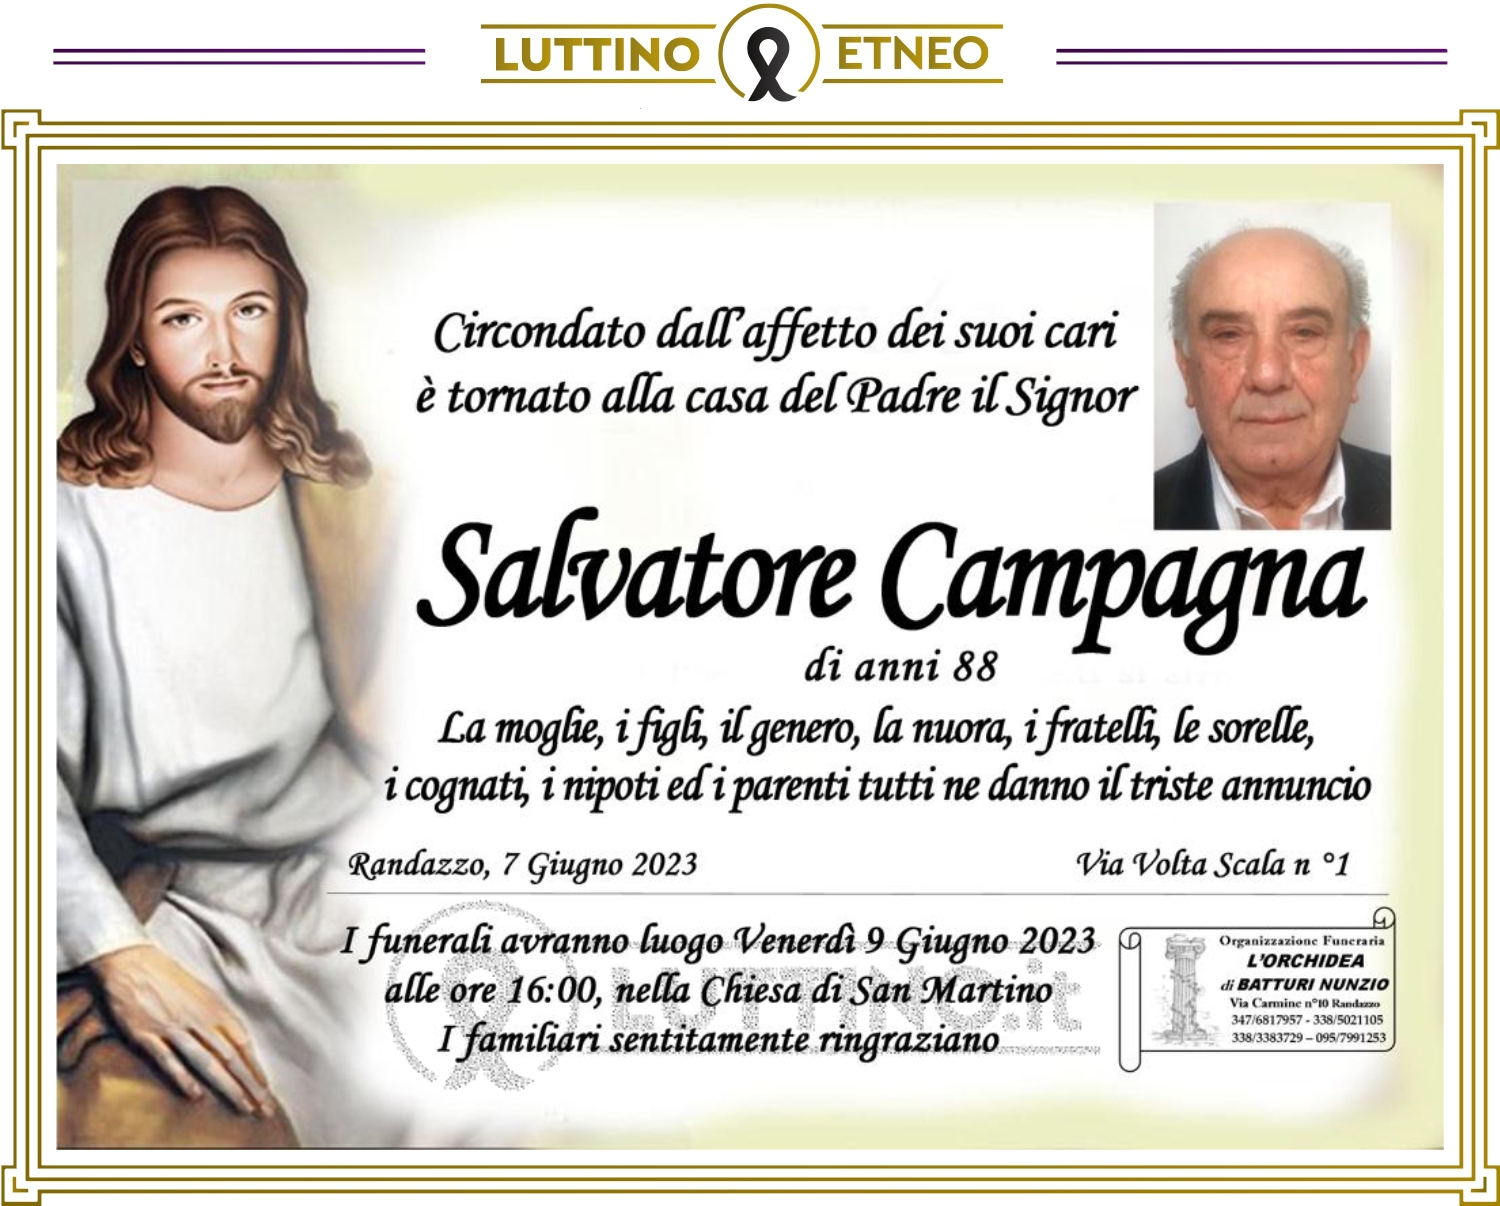 Salvatore Campagna